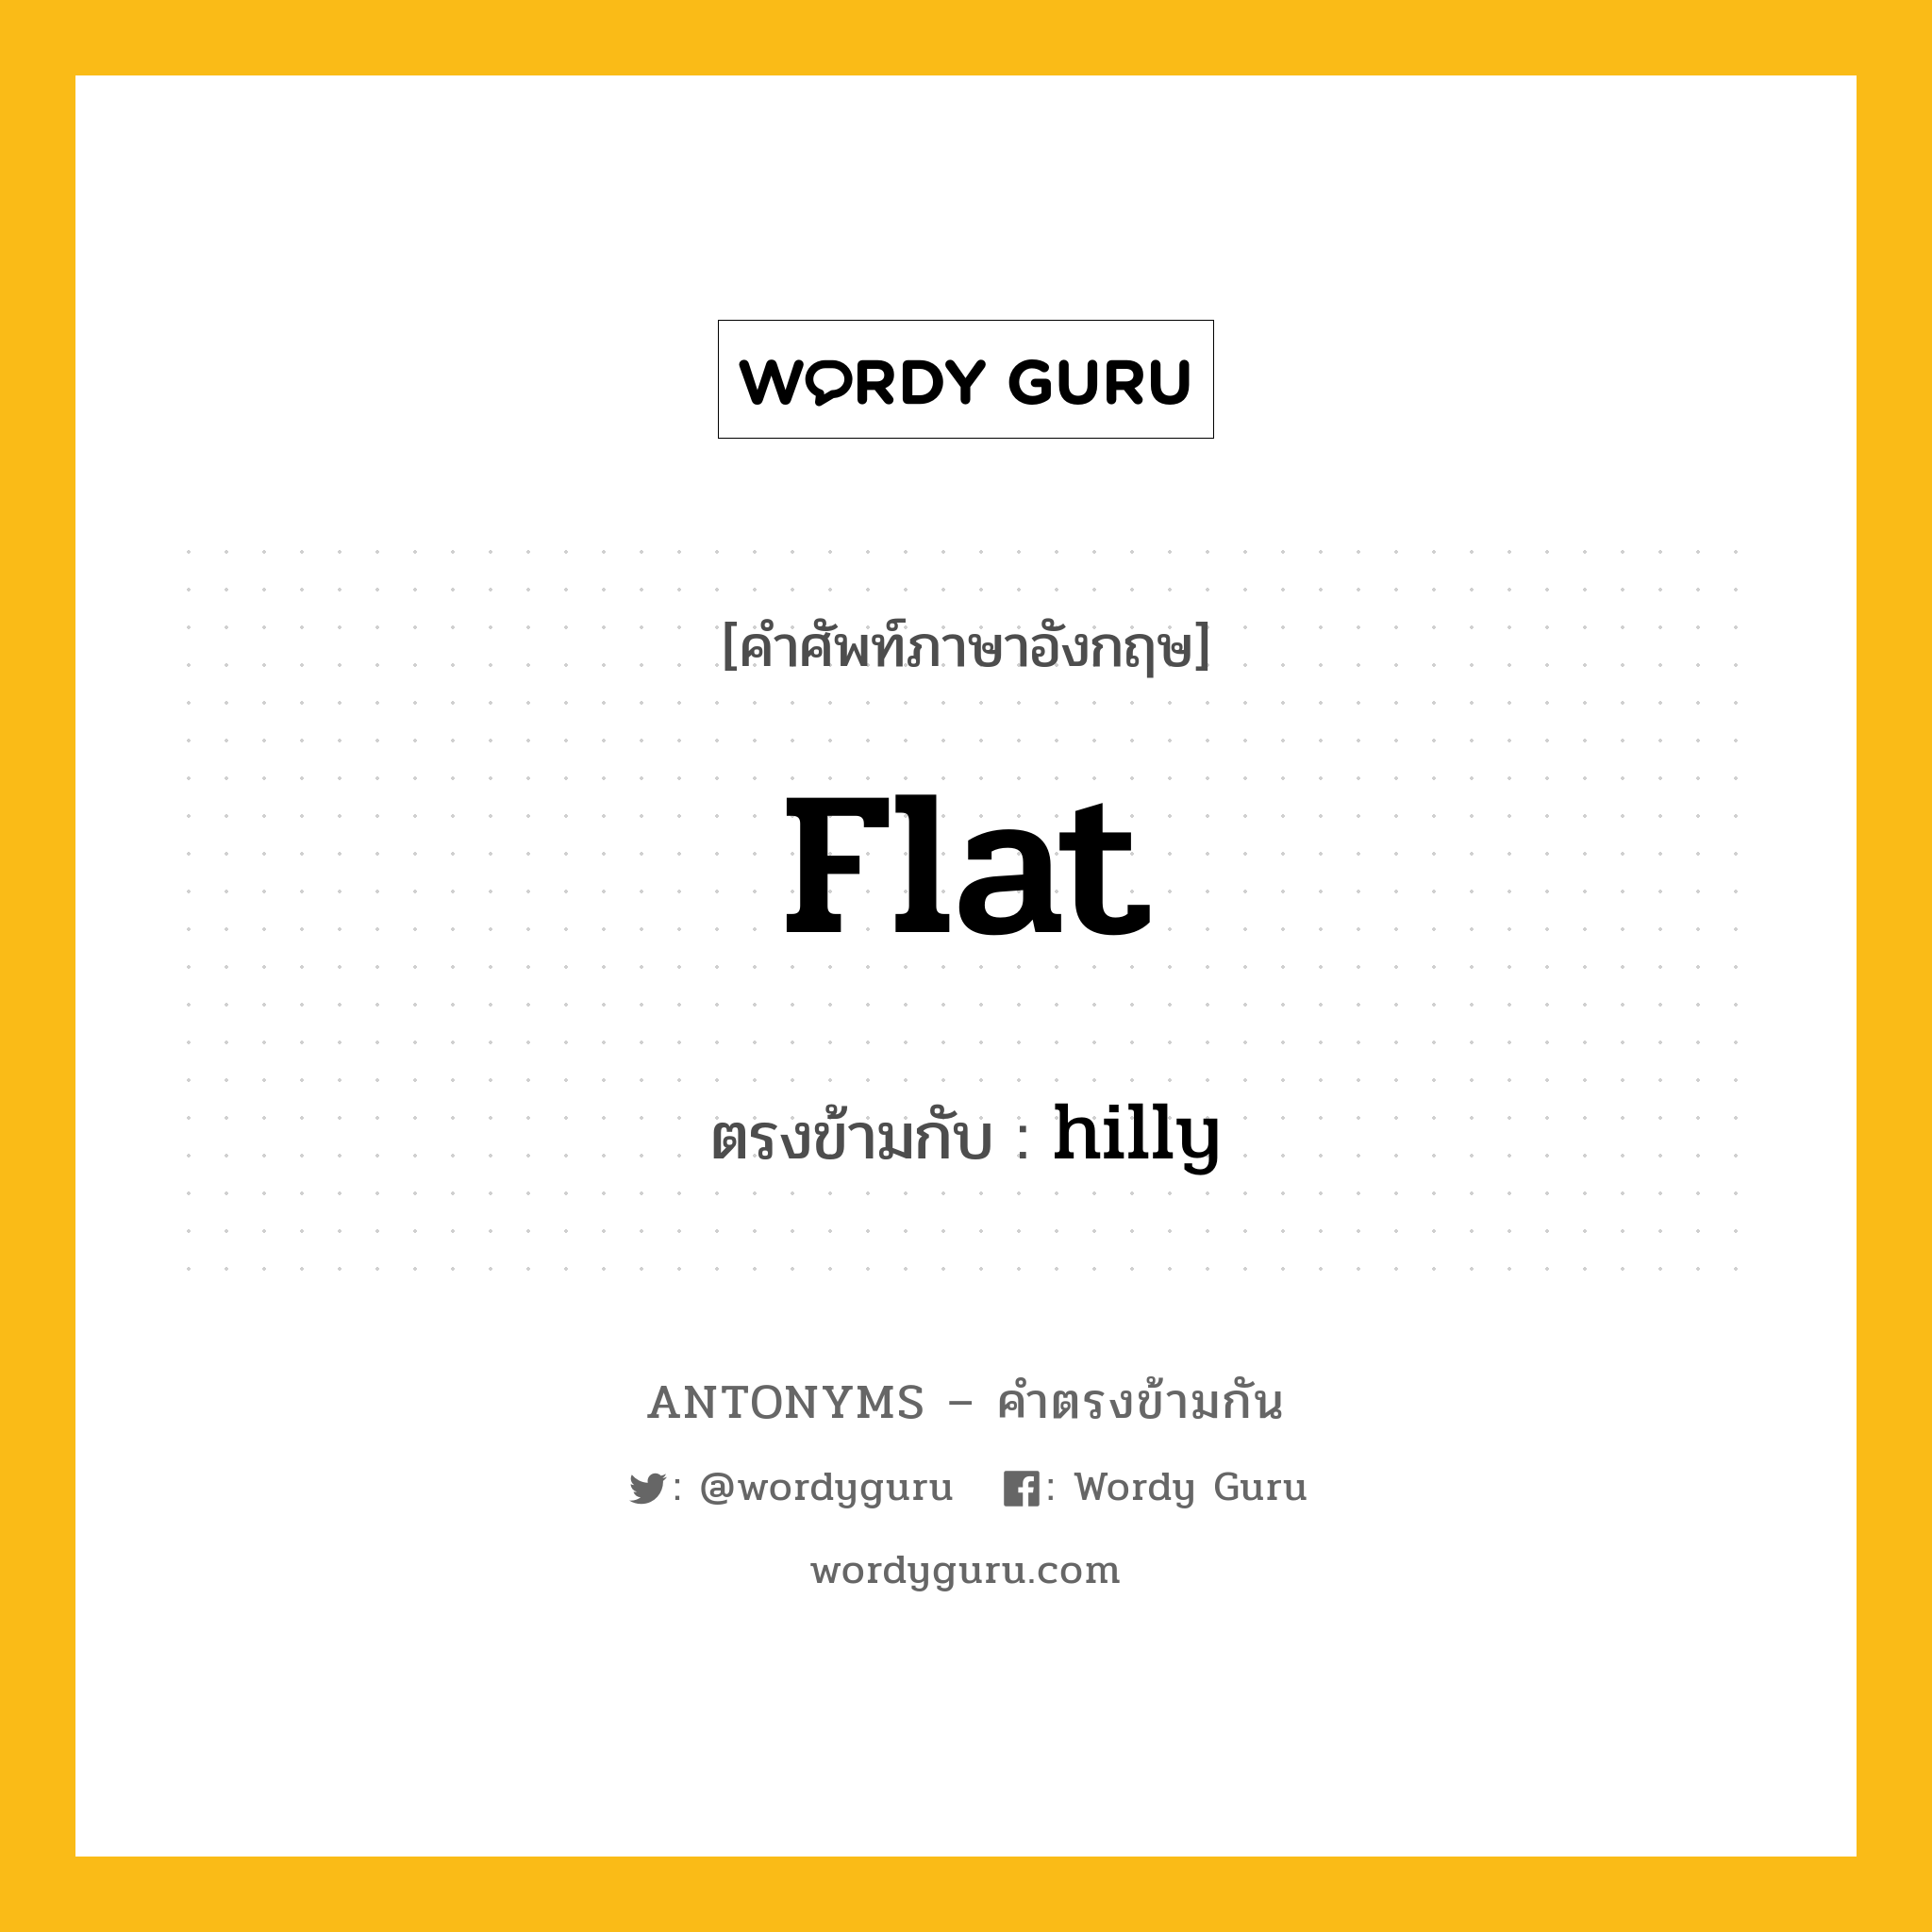 flat เป็นคำตรงข้ามกับคำไหนบ้าง?, คำศัพท์ภาษาอังกฤษ flat ตรงข้ามกับ hilly หมวด hilly